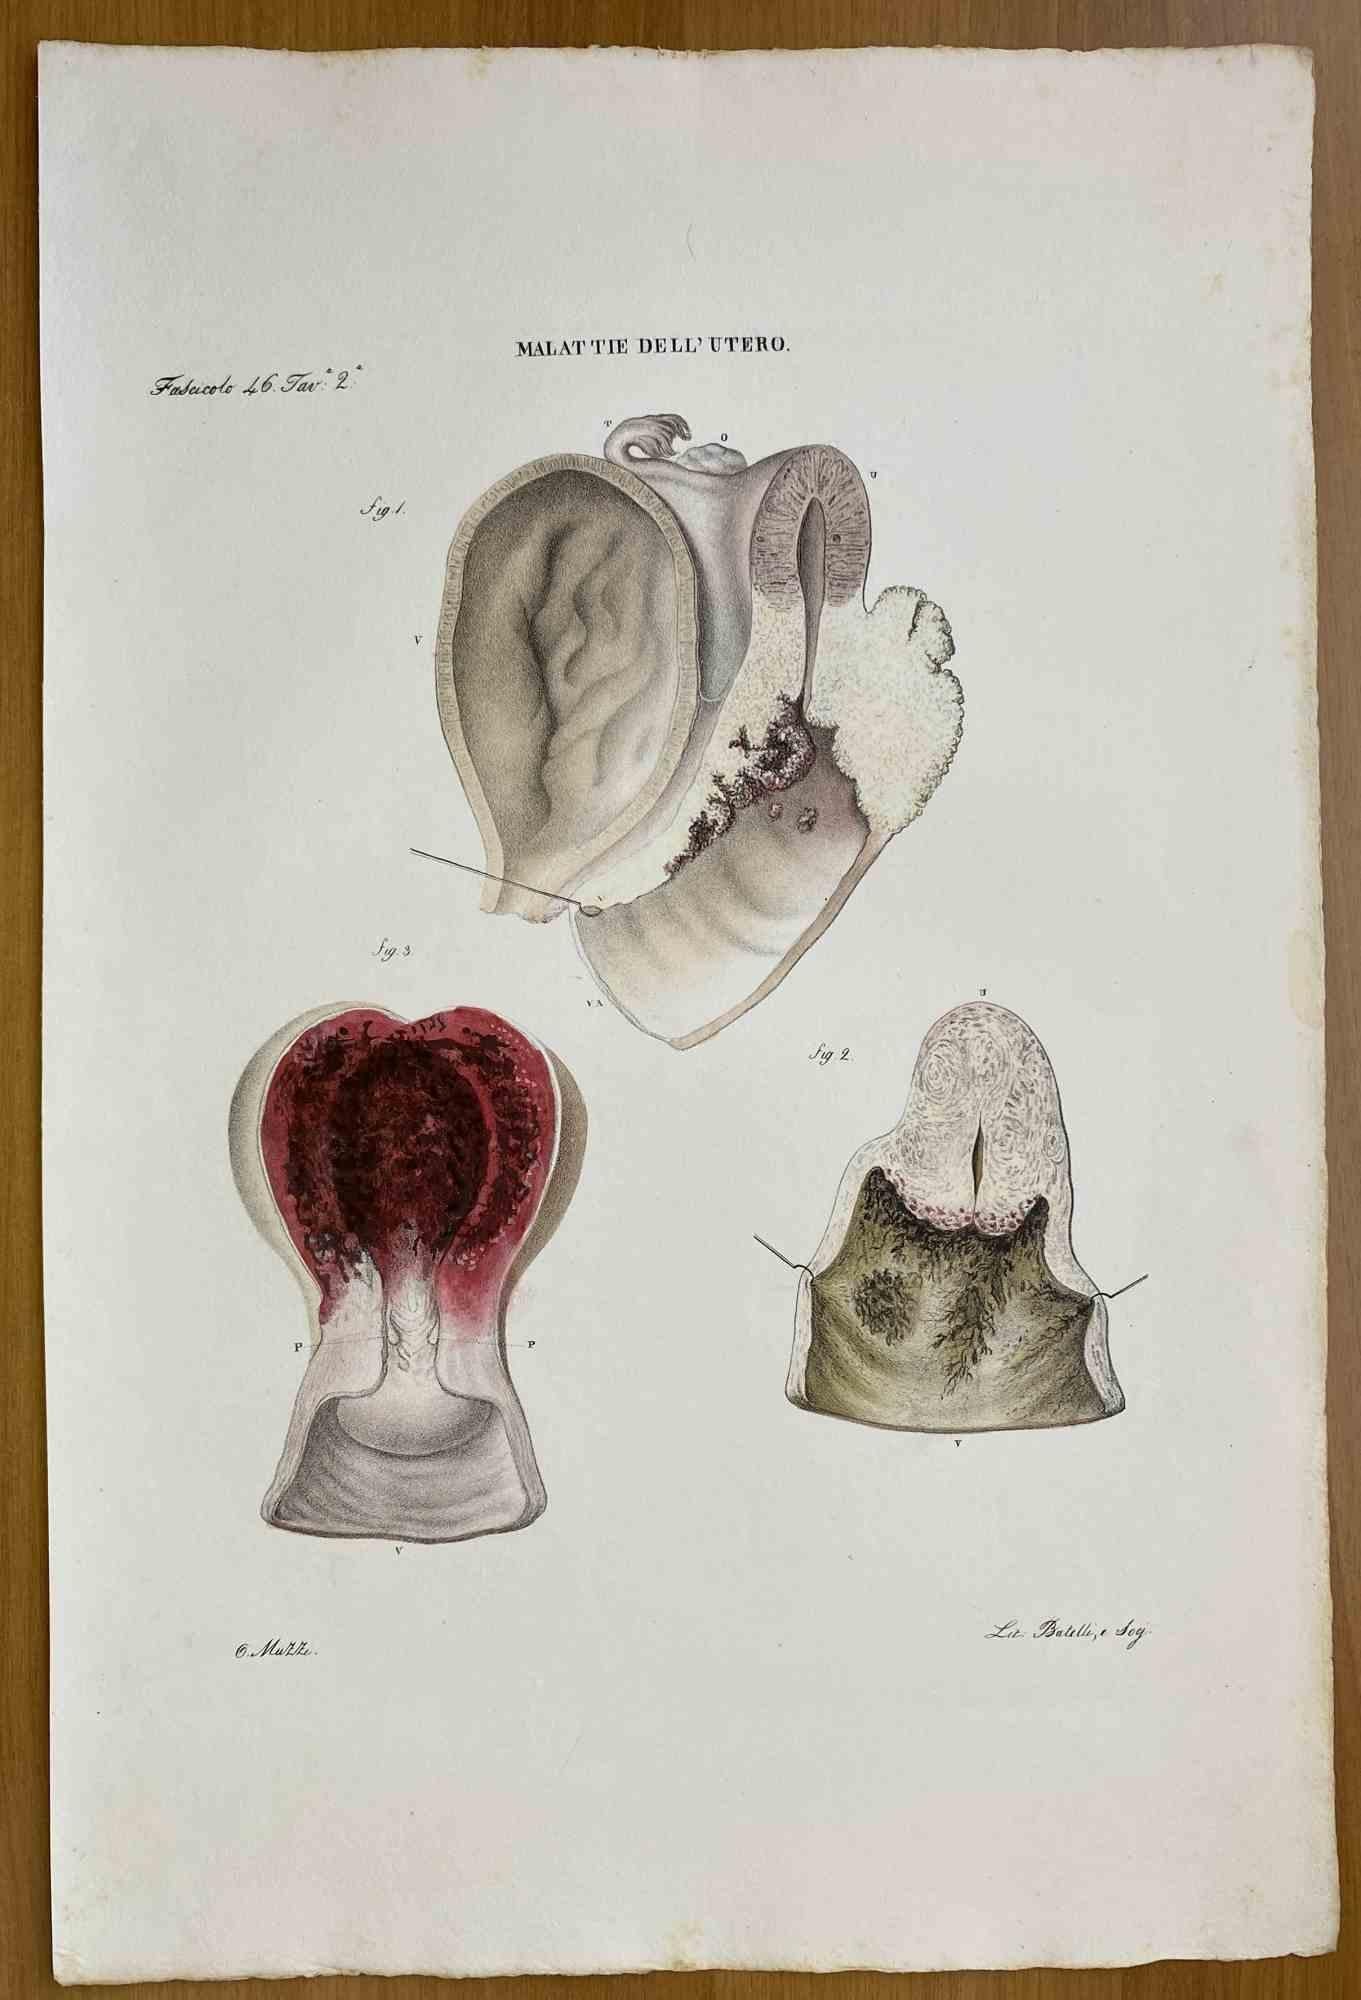  Diseases of Uterus ist eine handkolorierte Lithographie von Ottavio Muzzi für die Ausgabe von Antoine Chazal, Human Anatomy, Printers Batelli and Ridolfi, 1843.

Das Werk gehört zum Atlante generale della anatomia patologica del corpo umano von